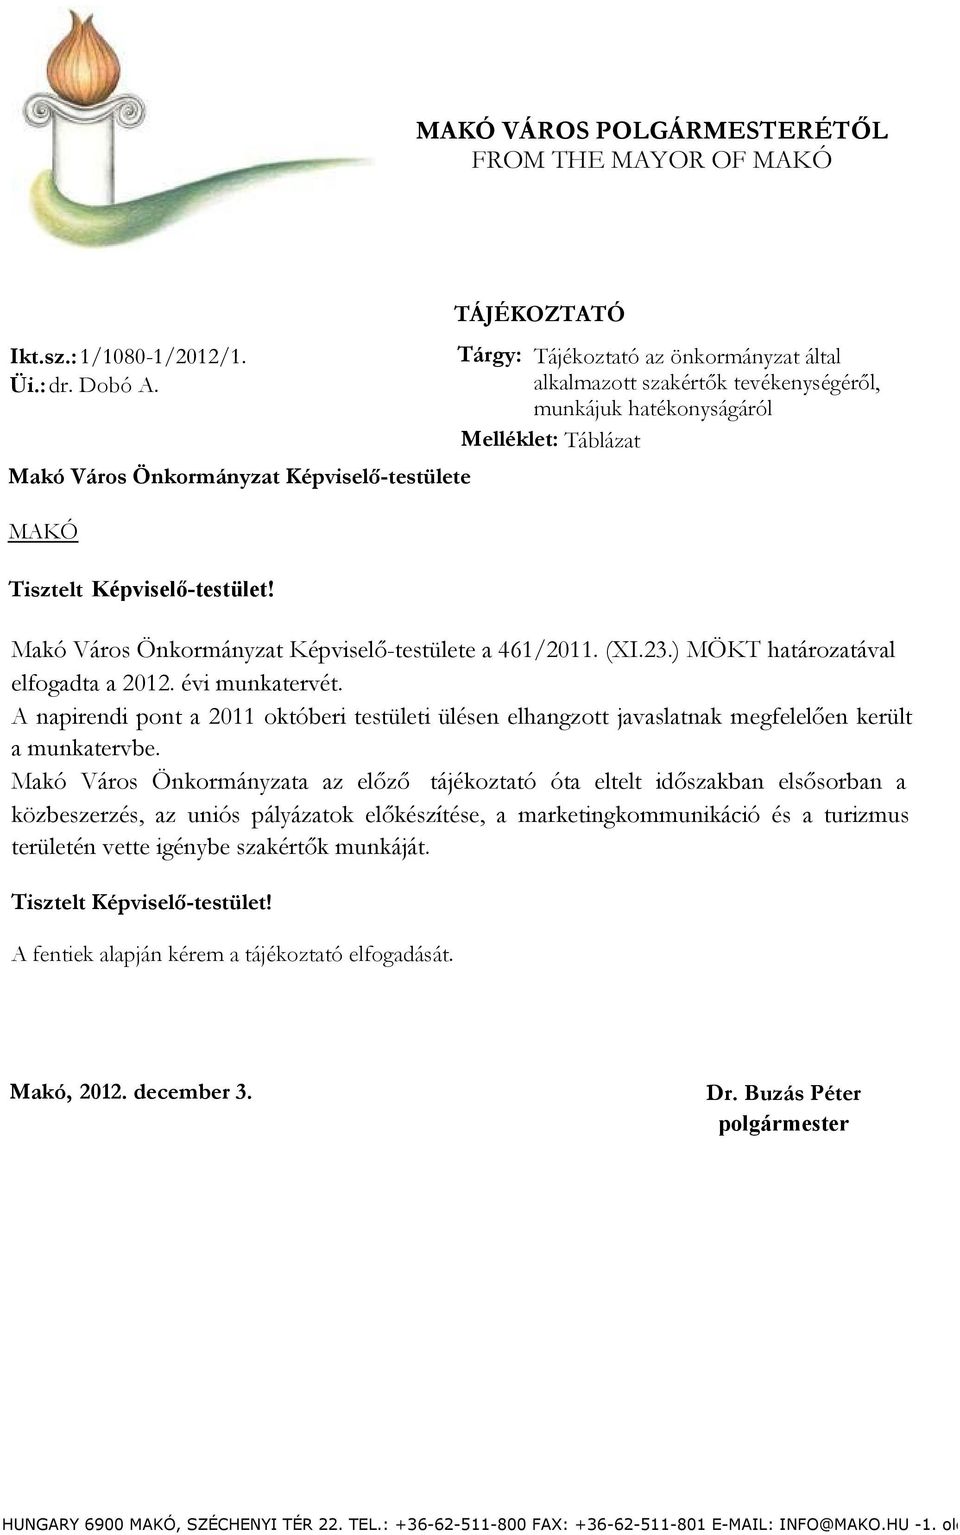 Makó Város Önkormányzat Képviselő-testülete a 461/2011. (XI.23.) MÖKT határozatával elfogadta a 2012. évi munkatervét.